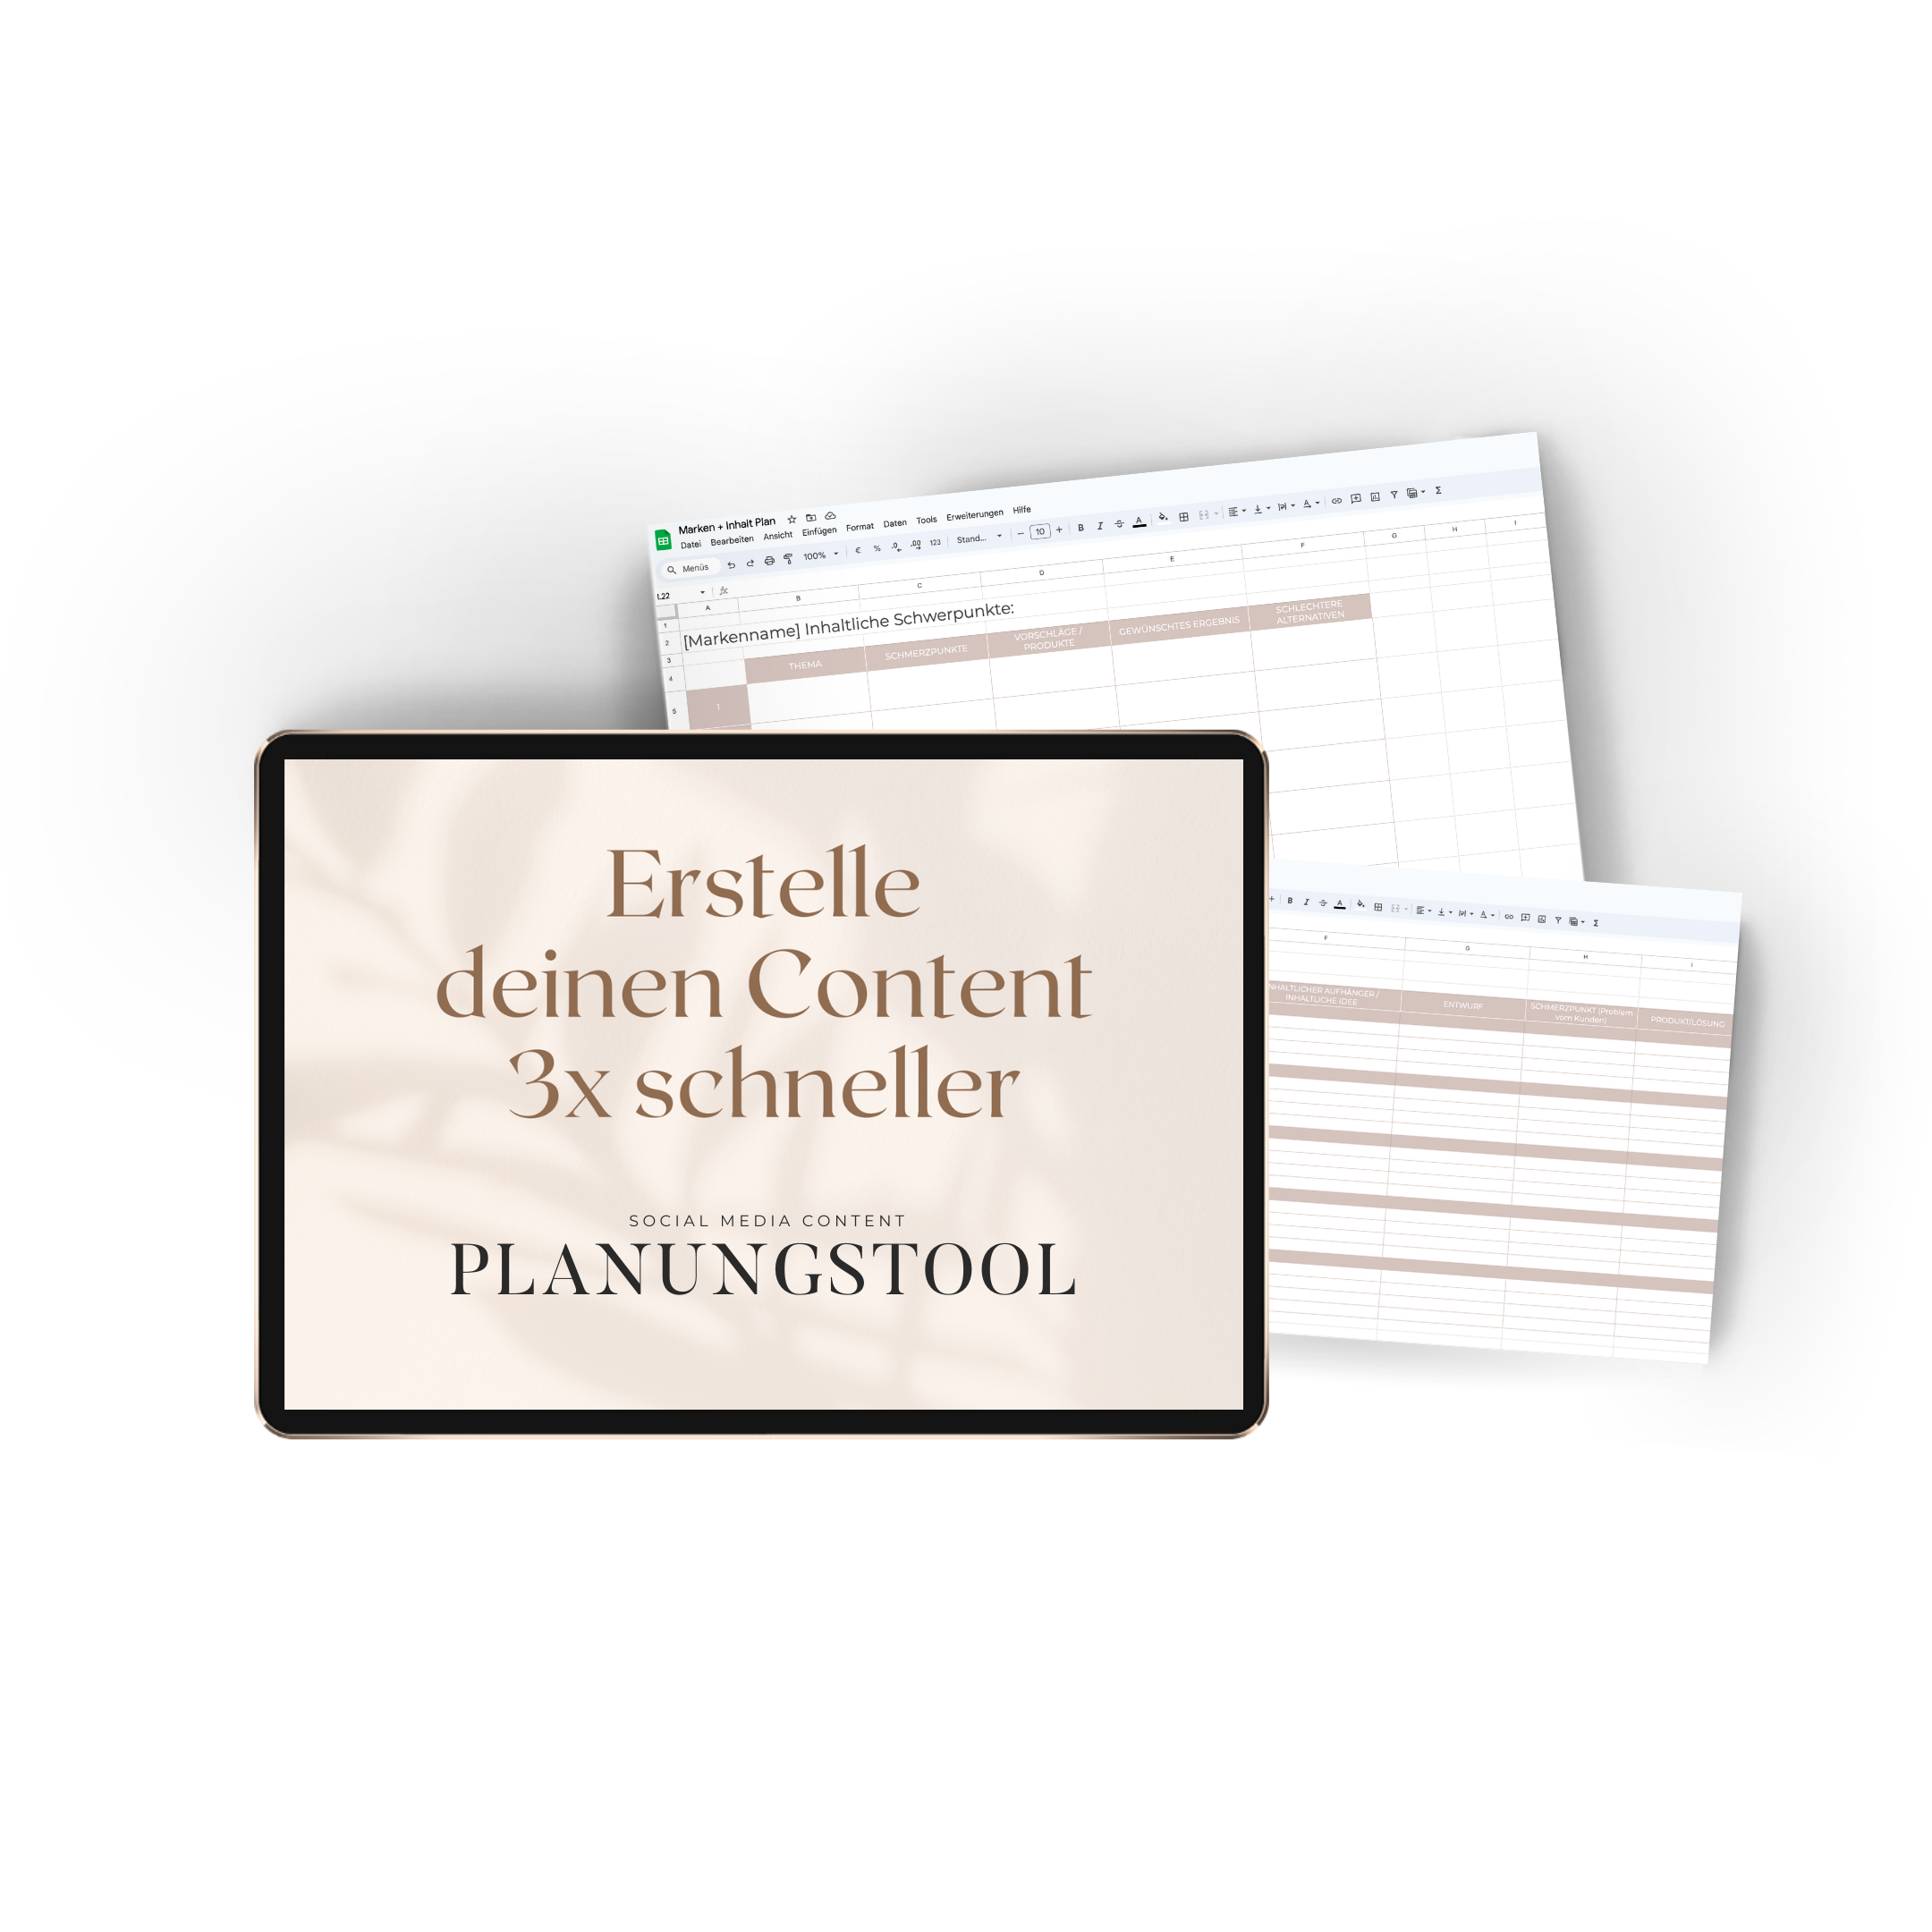 Social-Media-Planer-Content-Strategie-Planung-Tool